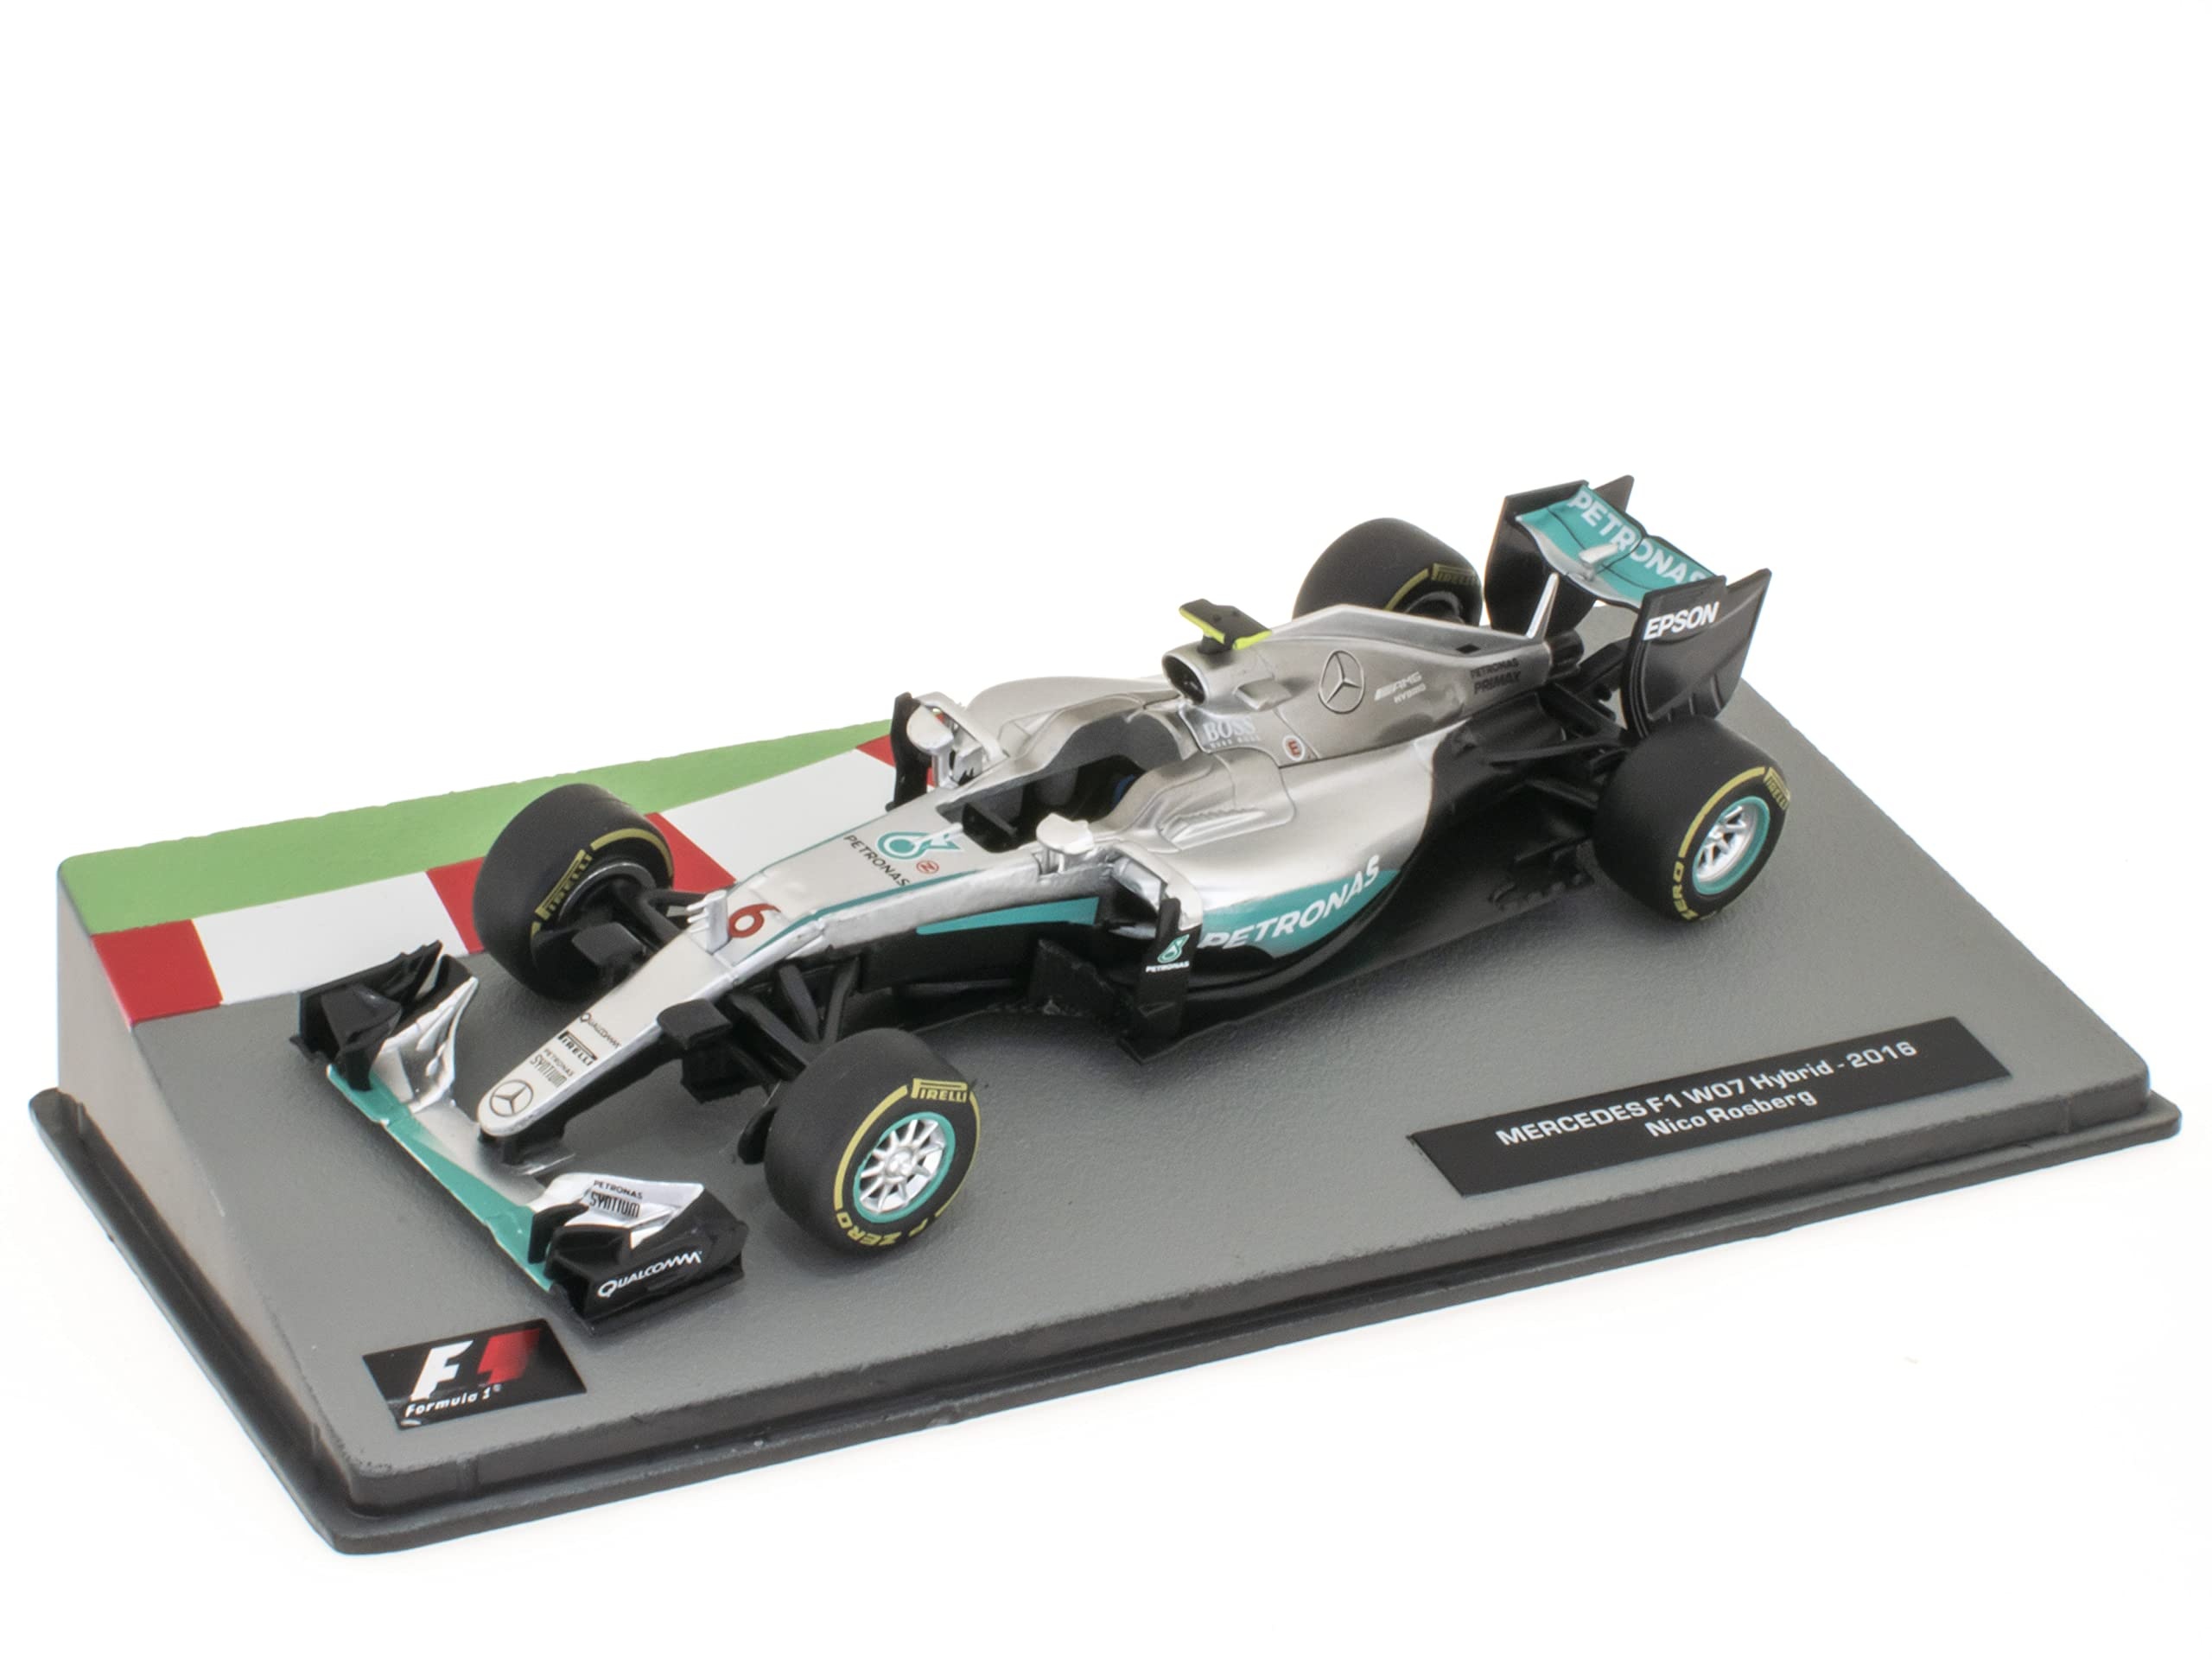 OPO 10 - Miniaturauto Formel 1 1/43 kompatibel mit Mercedes F1 W07 Hybrid - Nico Rosberg - 2016 - FD077